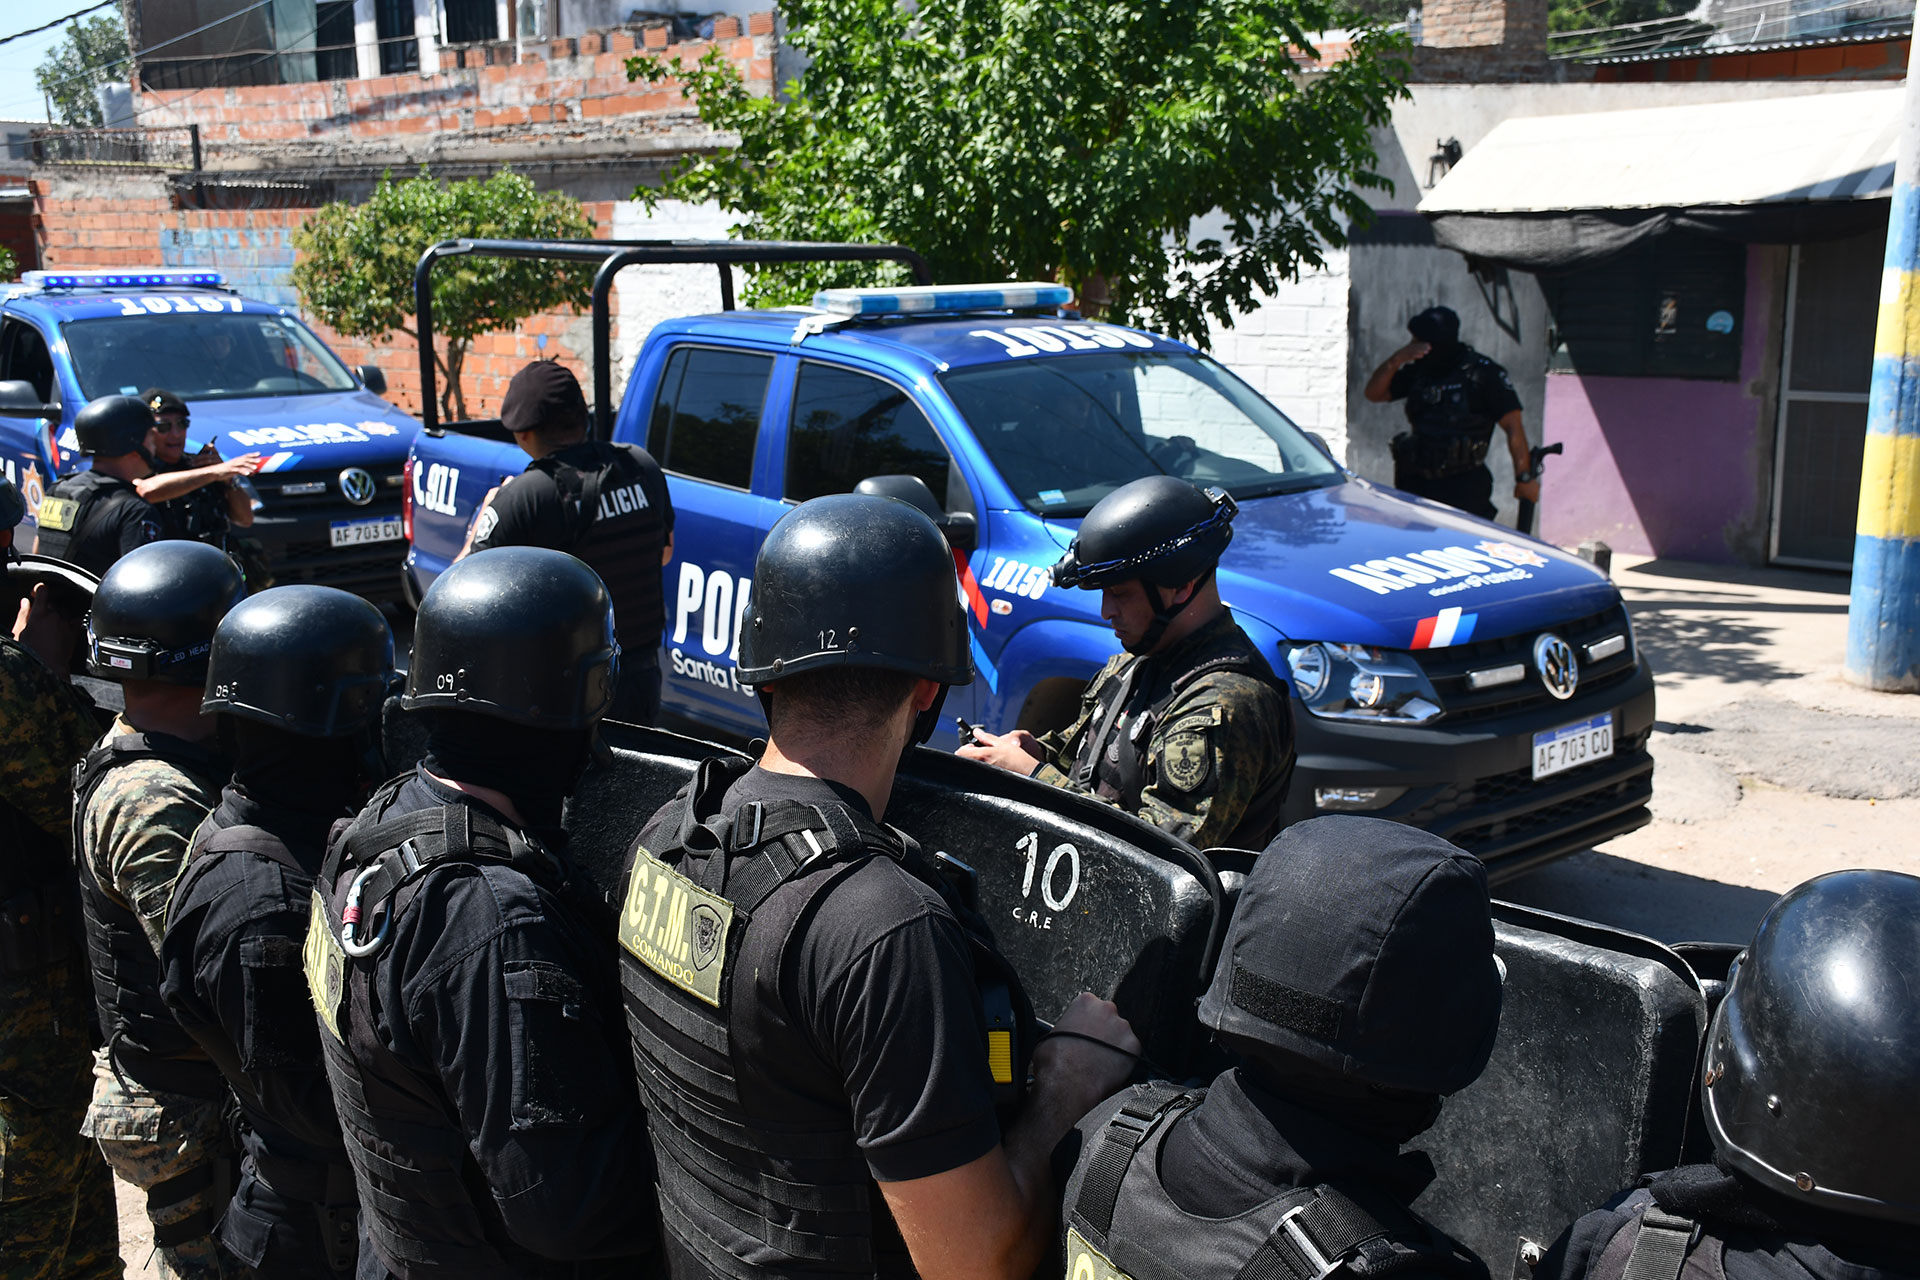 Incidentes en Rosario: fuerte presencia policial para sacar al sospechoso que estaba en el búnker atacado por los vecinos